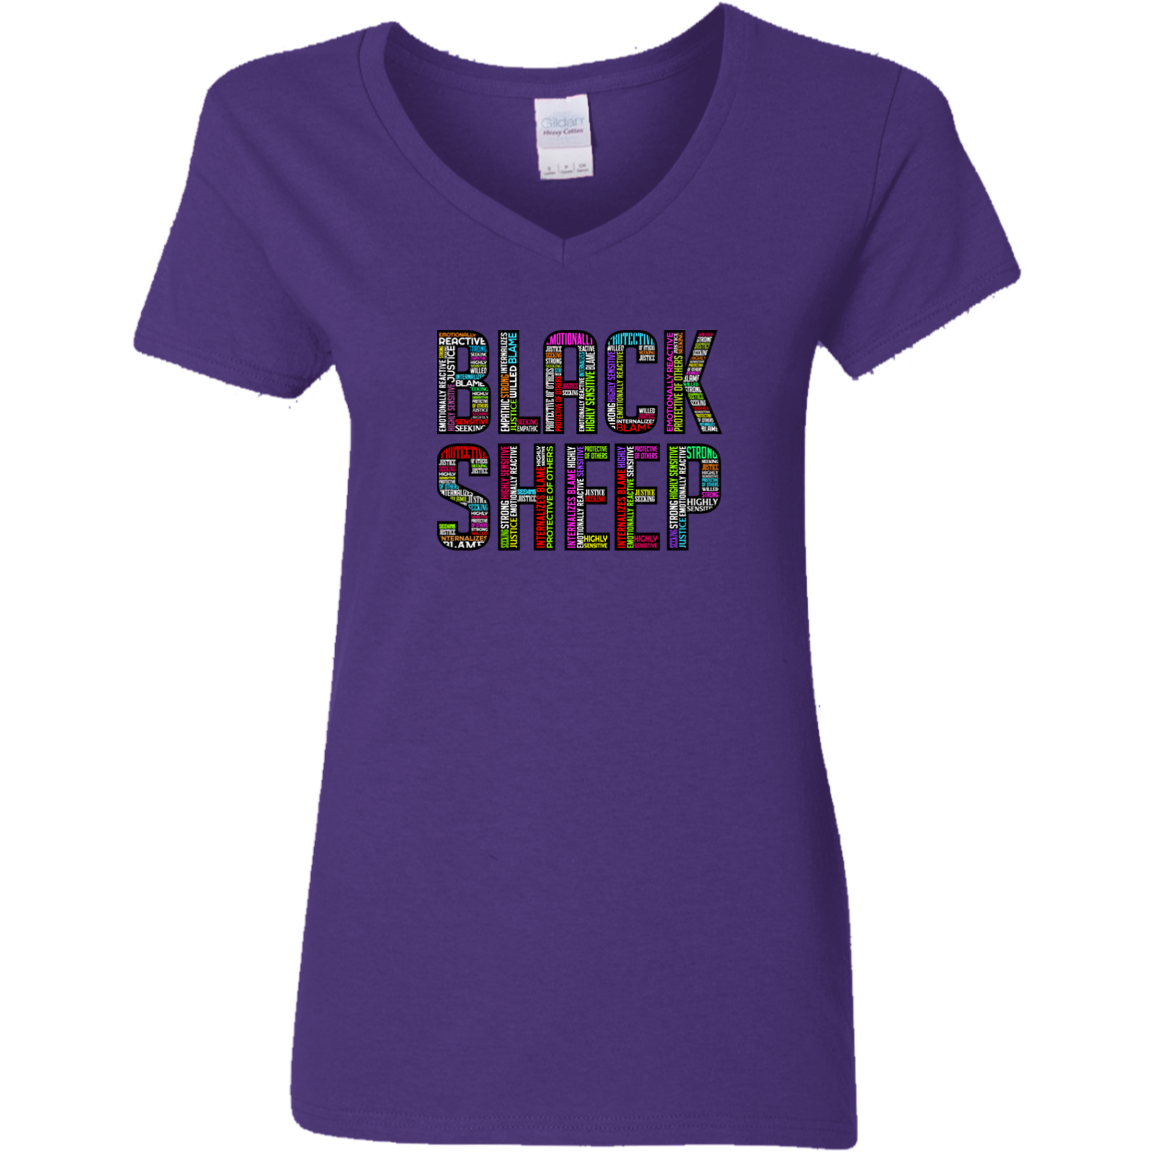 Black Sheep Attributes - G500VL Ladies' 5.3 oz. V-Neck T-Shirt